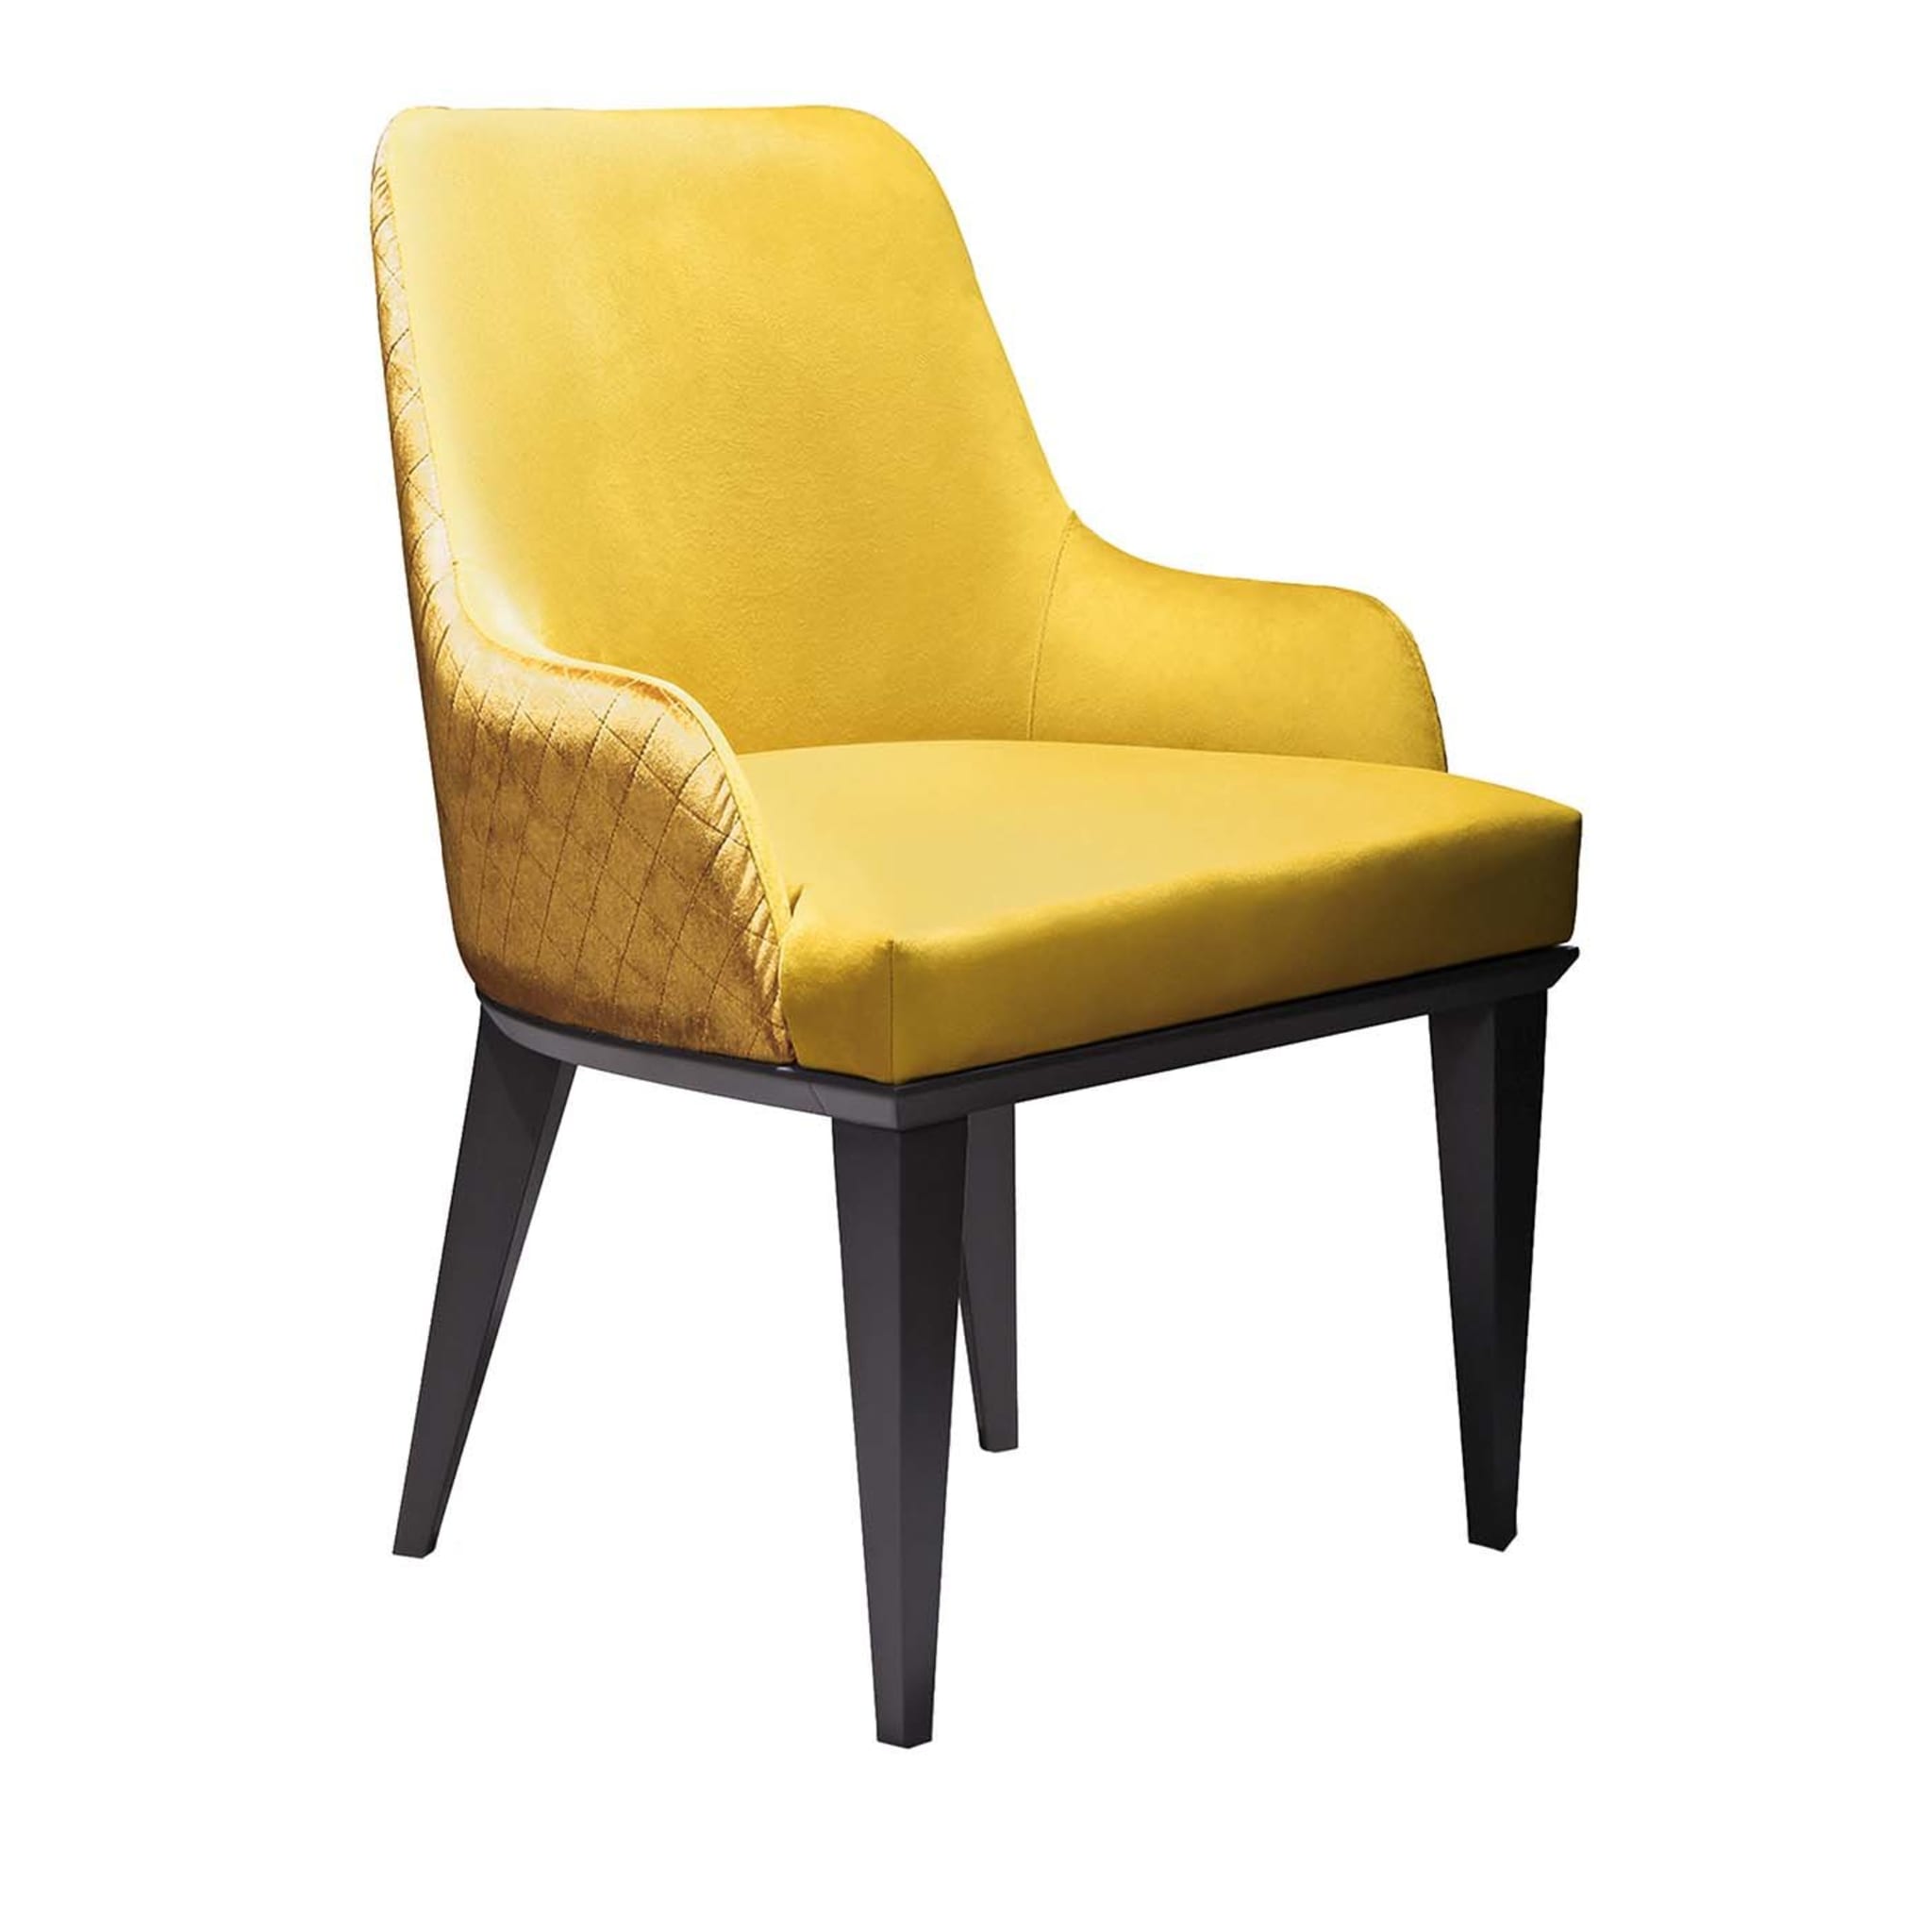 Chaise d'ambiance naturelle Hanami jaune - Vue principale